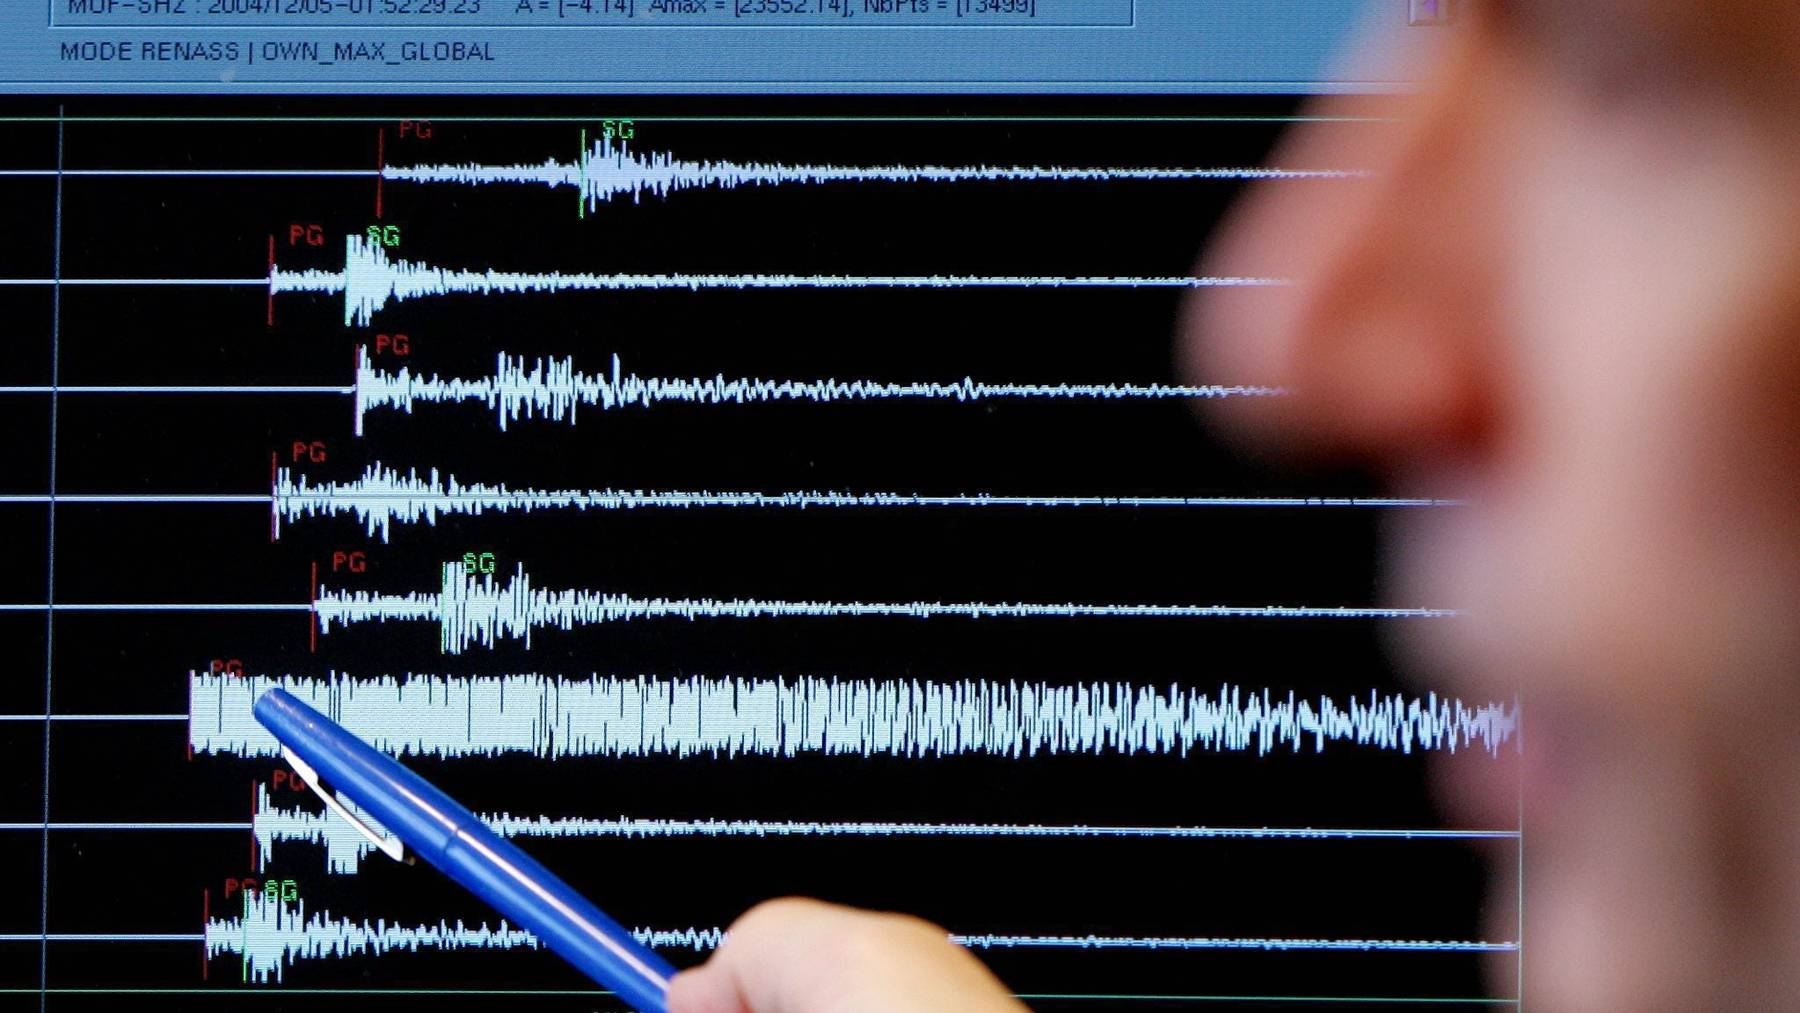 Ein Graph registriert die Erschütterung eines Erdbebens.